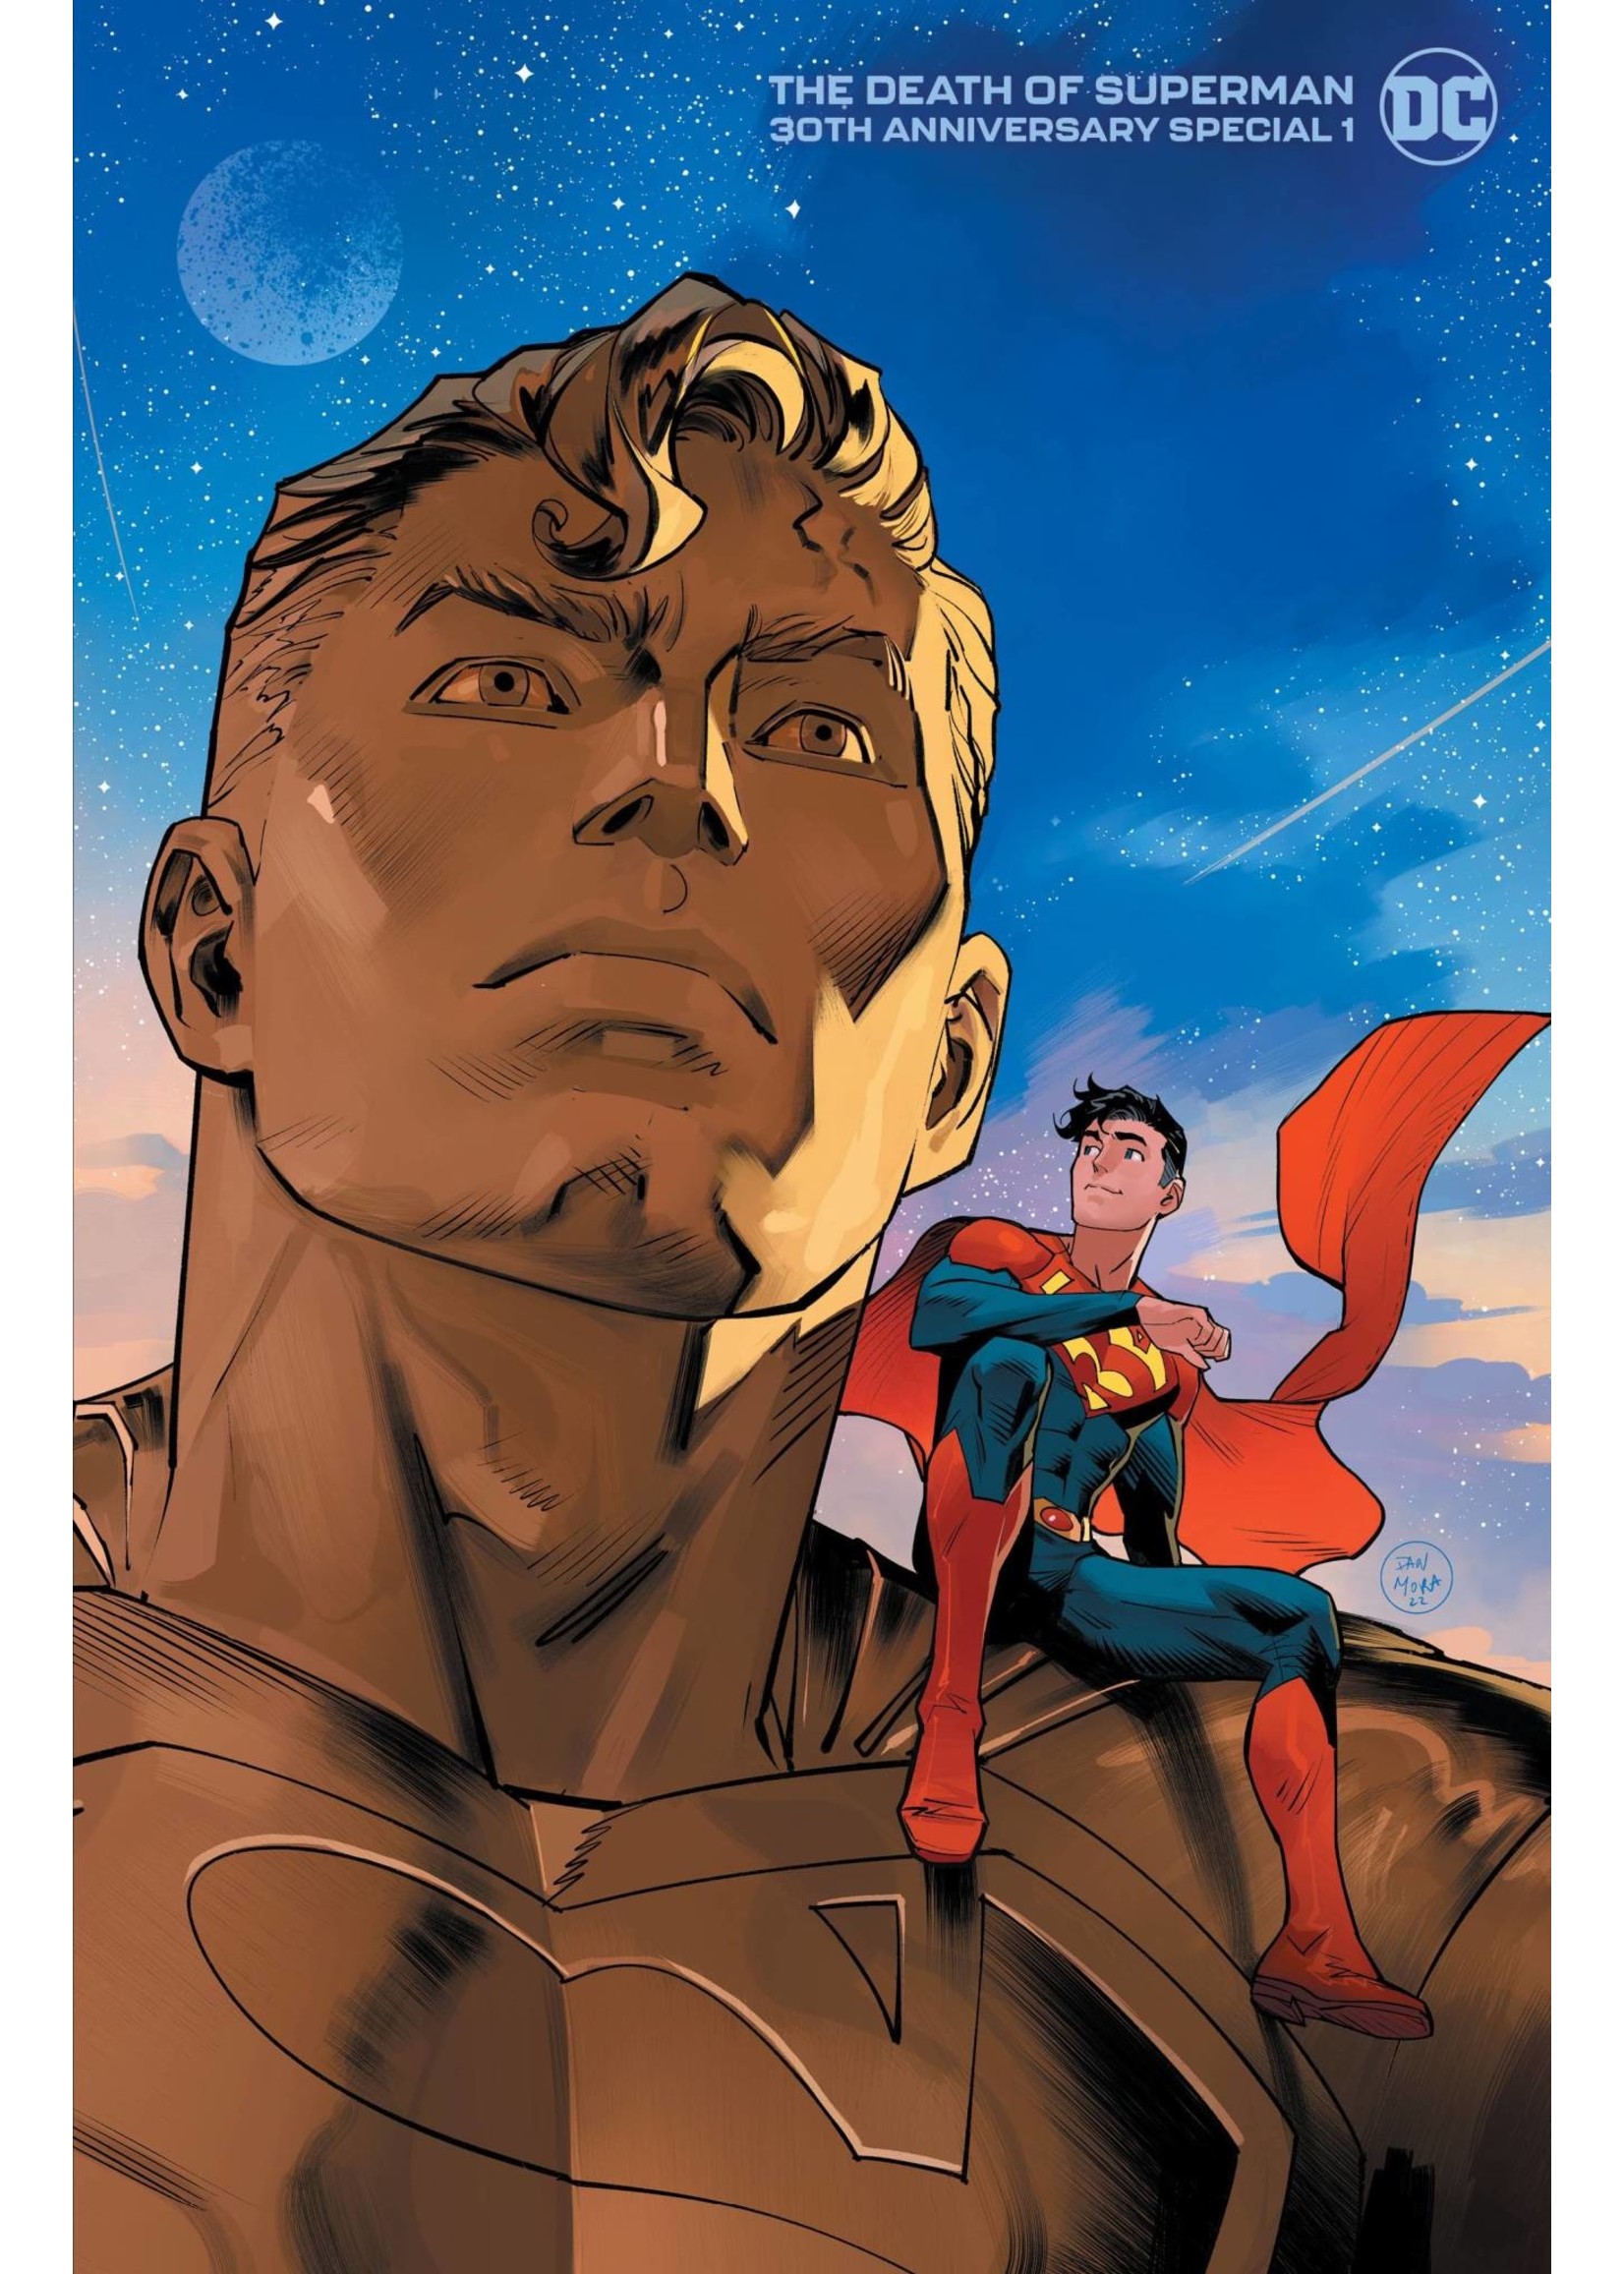 DC COMICS DEATH OF SUPERMAN 30TH ANNIV. SPECIAL #1 DAN MORA CVR